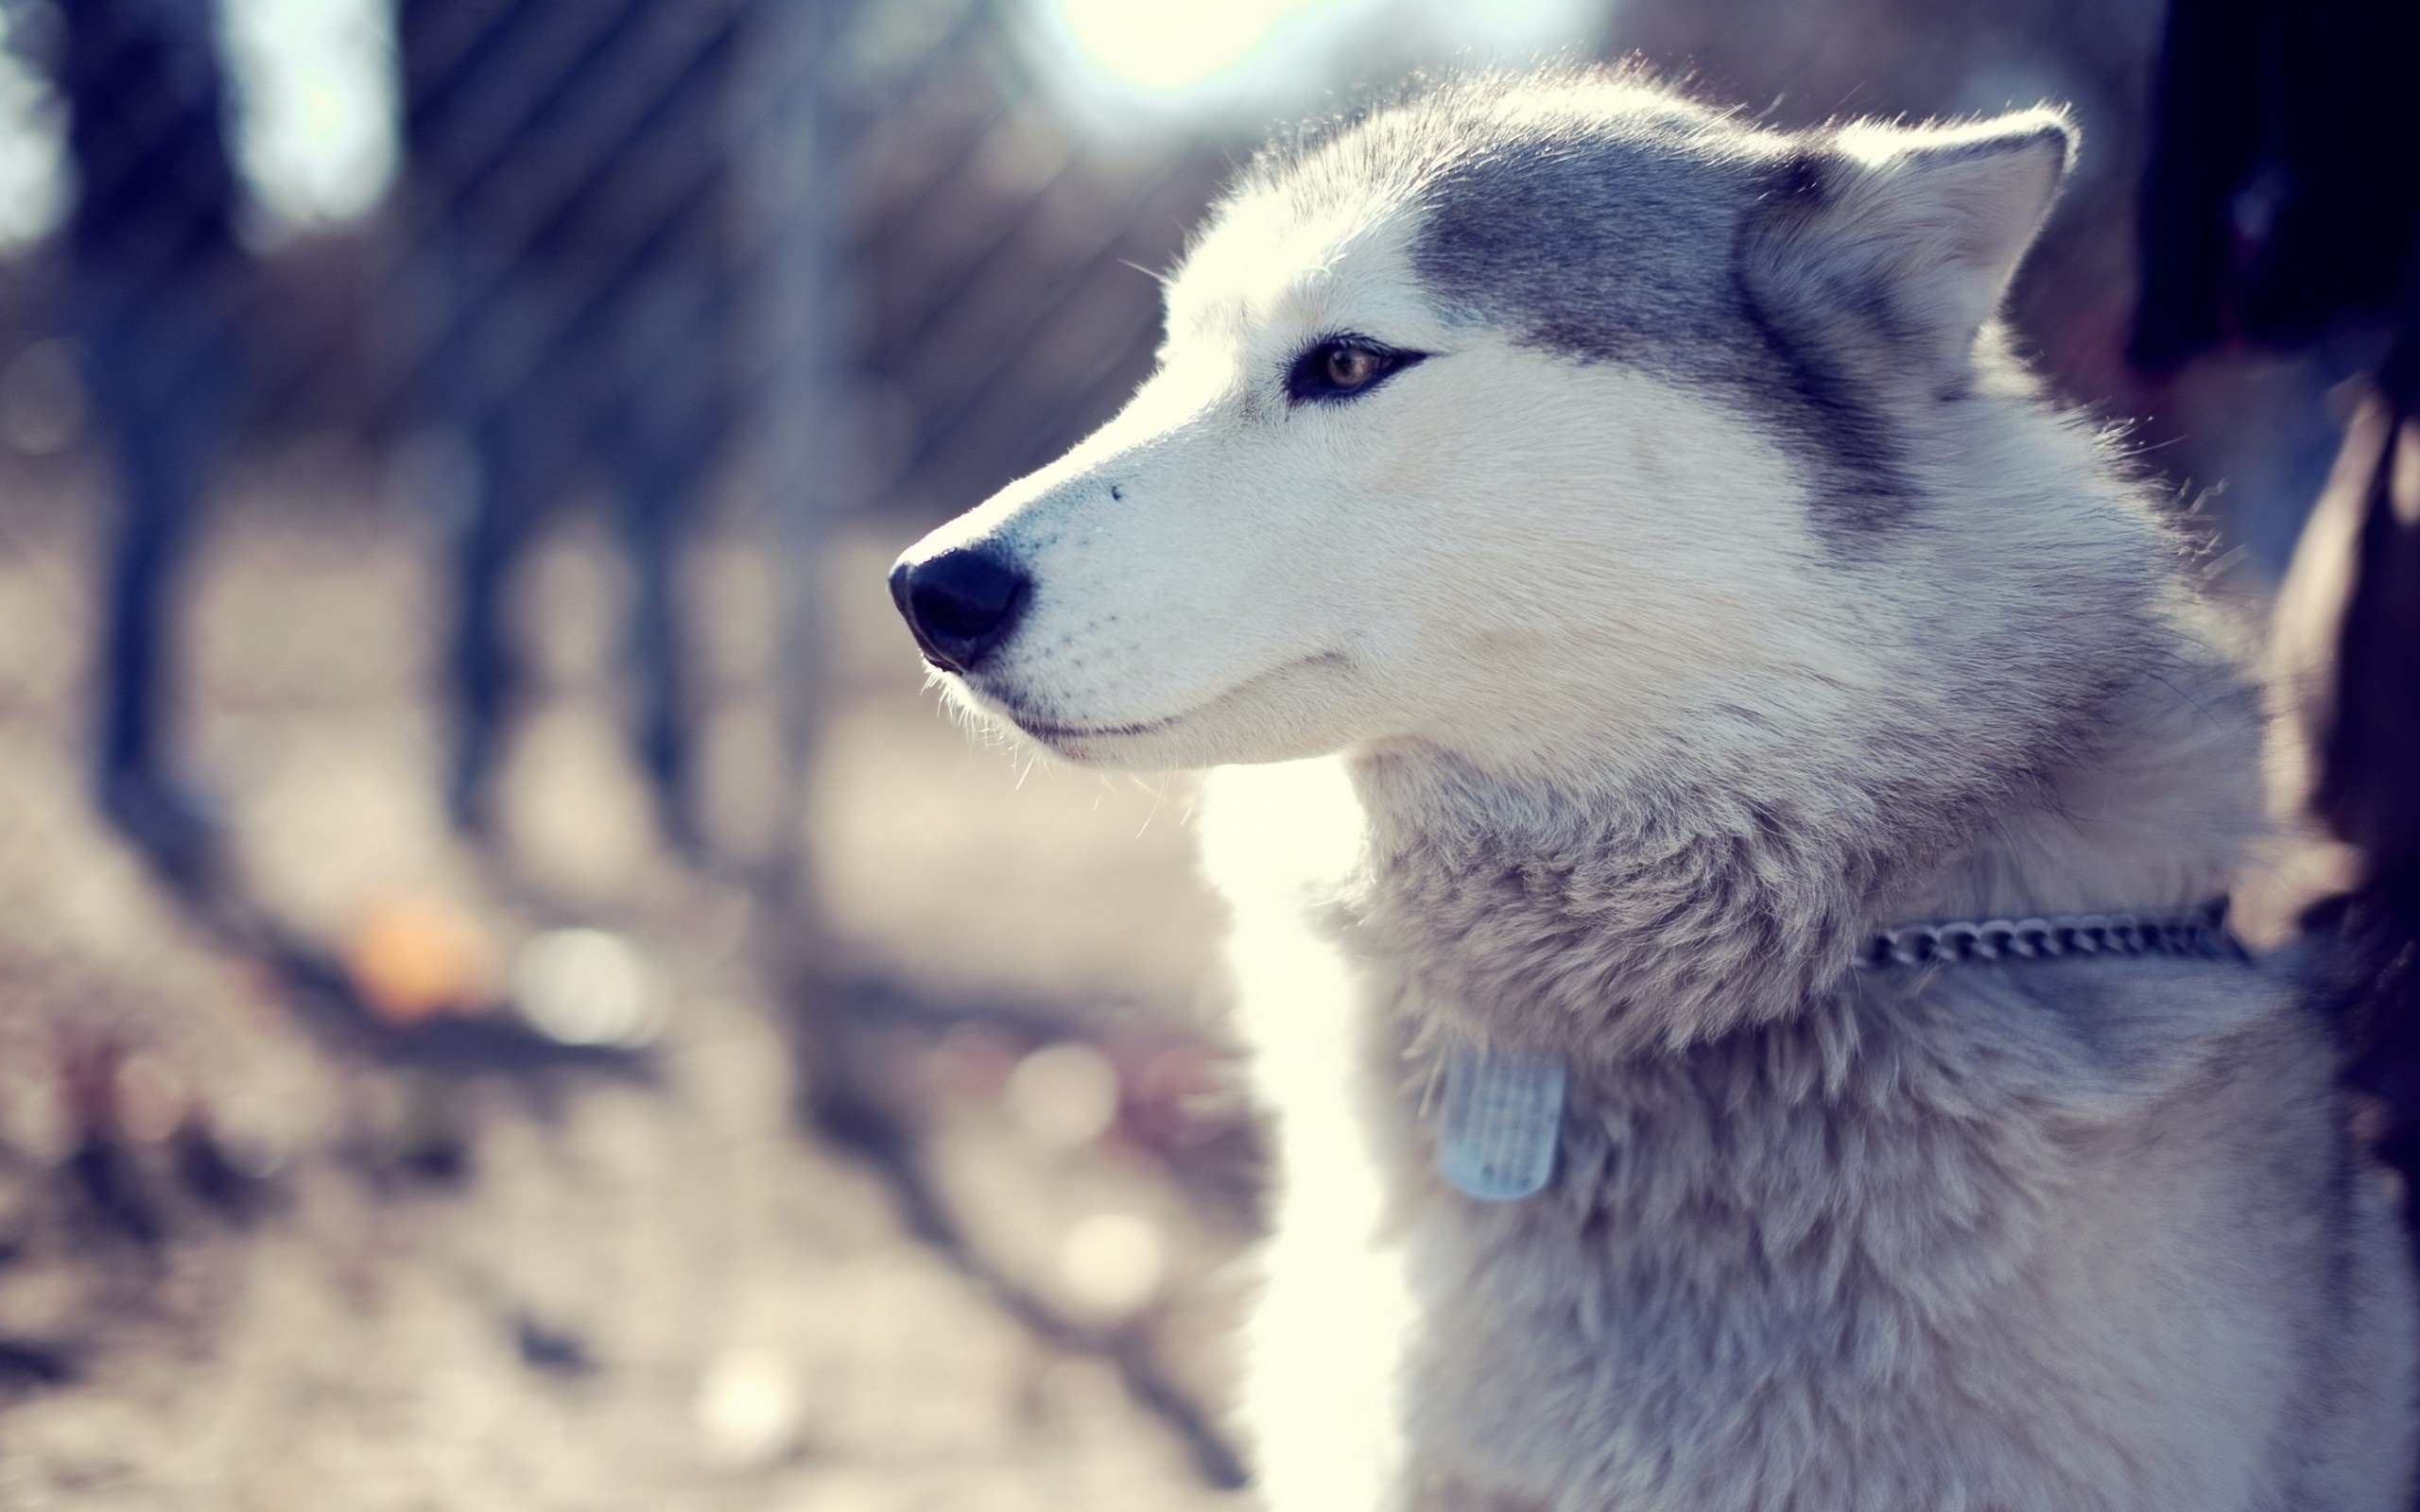 Husky in snow, Winter wallpaper, Arctic dog, Wallpaperhere, 2560x1600 HD Desktop